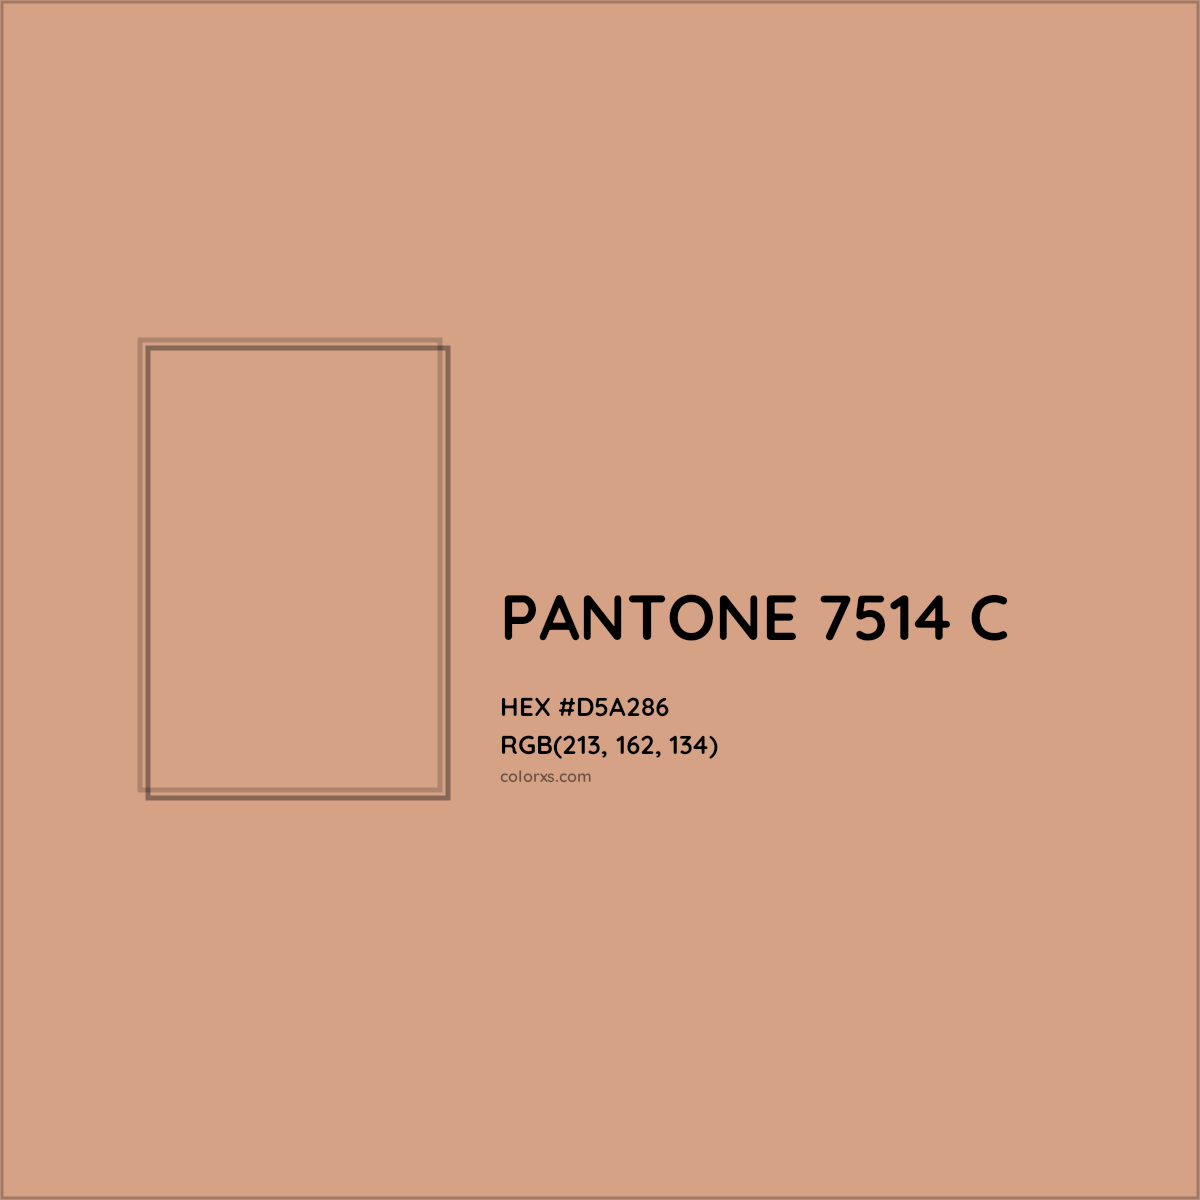 HEX #D5A286 PANTONE 7514 C CMS Pantone PMS - Color Code